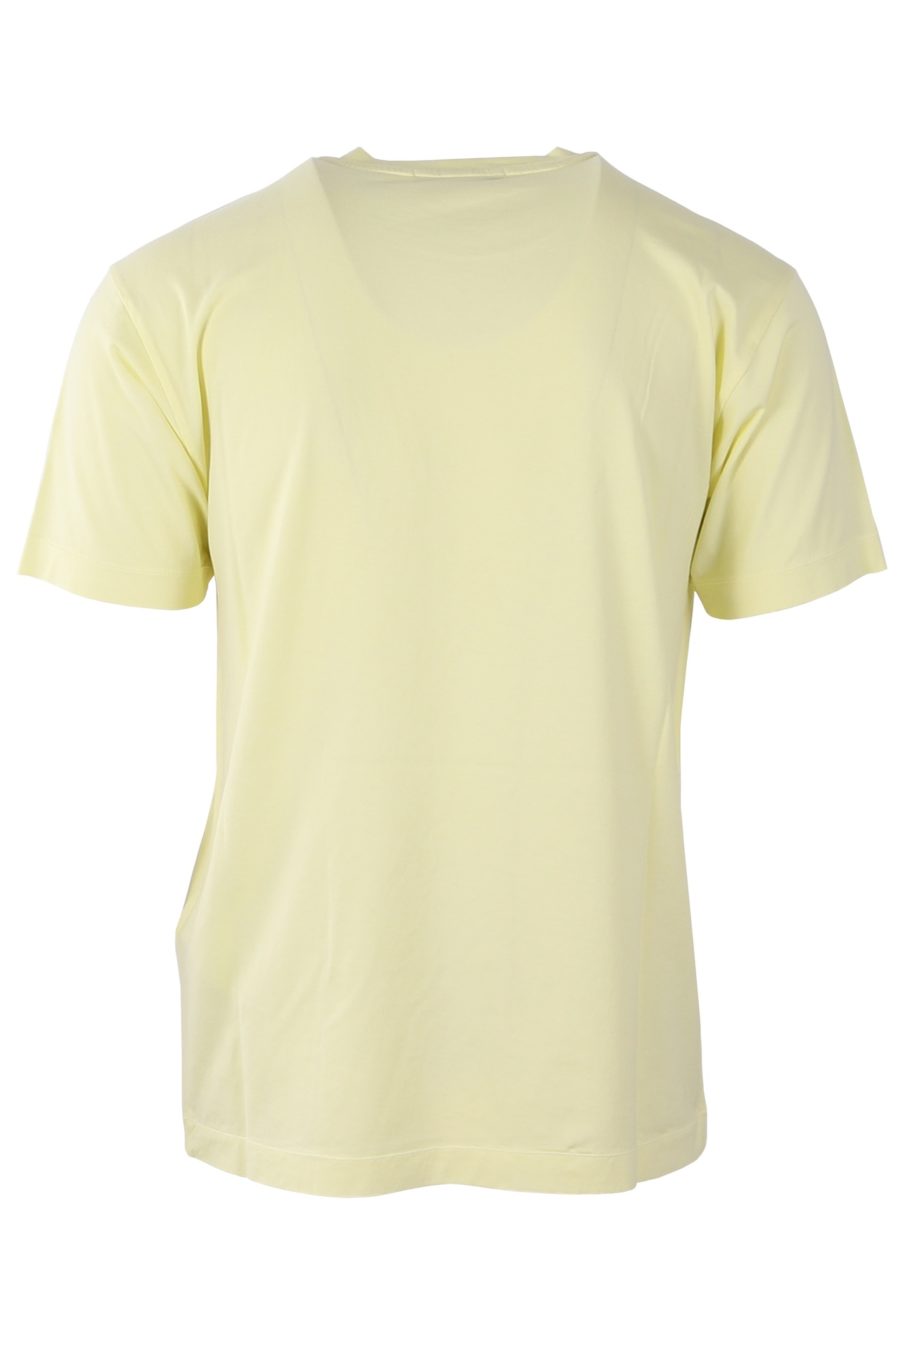 Stone Island T-shirt jaune avec patch - c783ed4e481008e690ff14a1356bb7940f6fa864